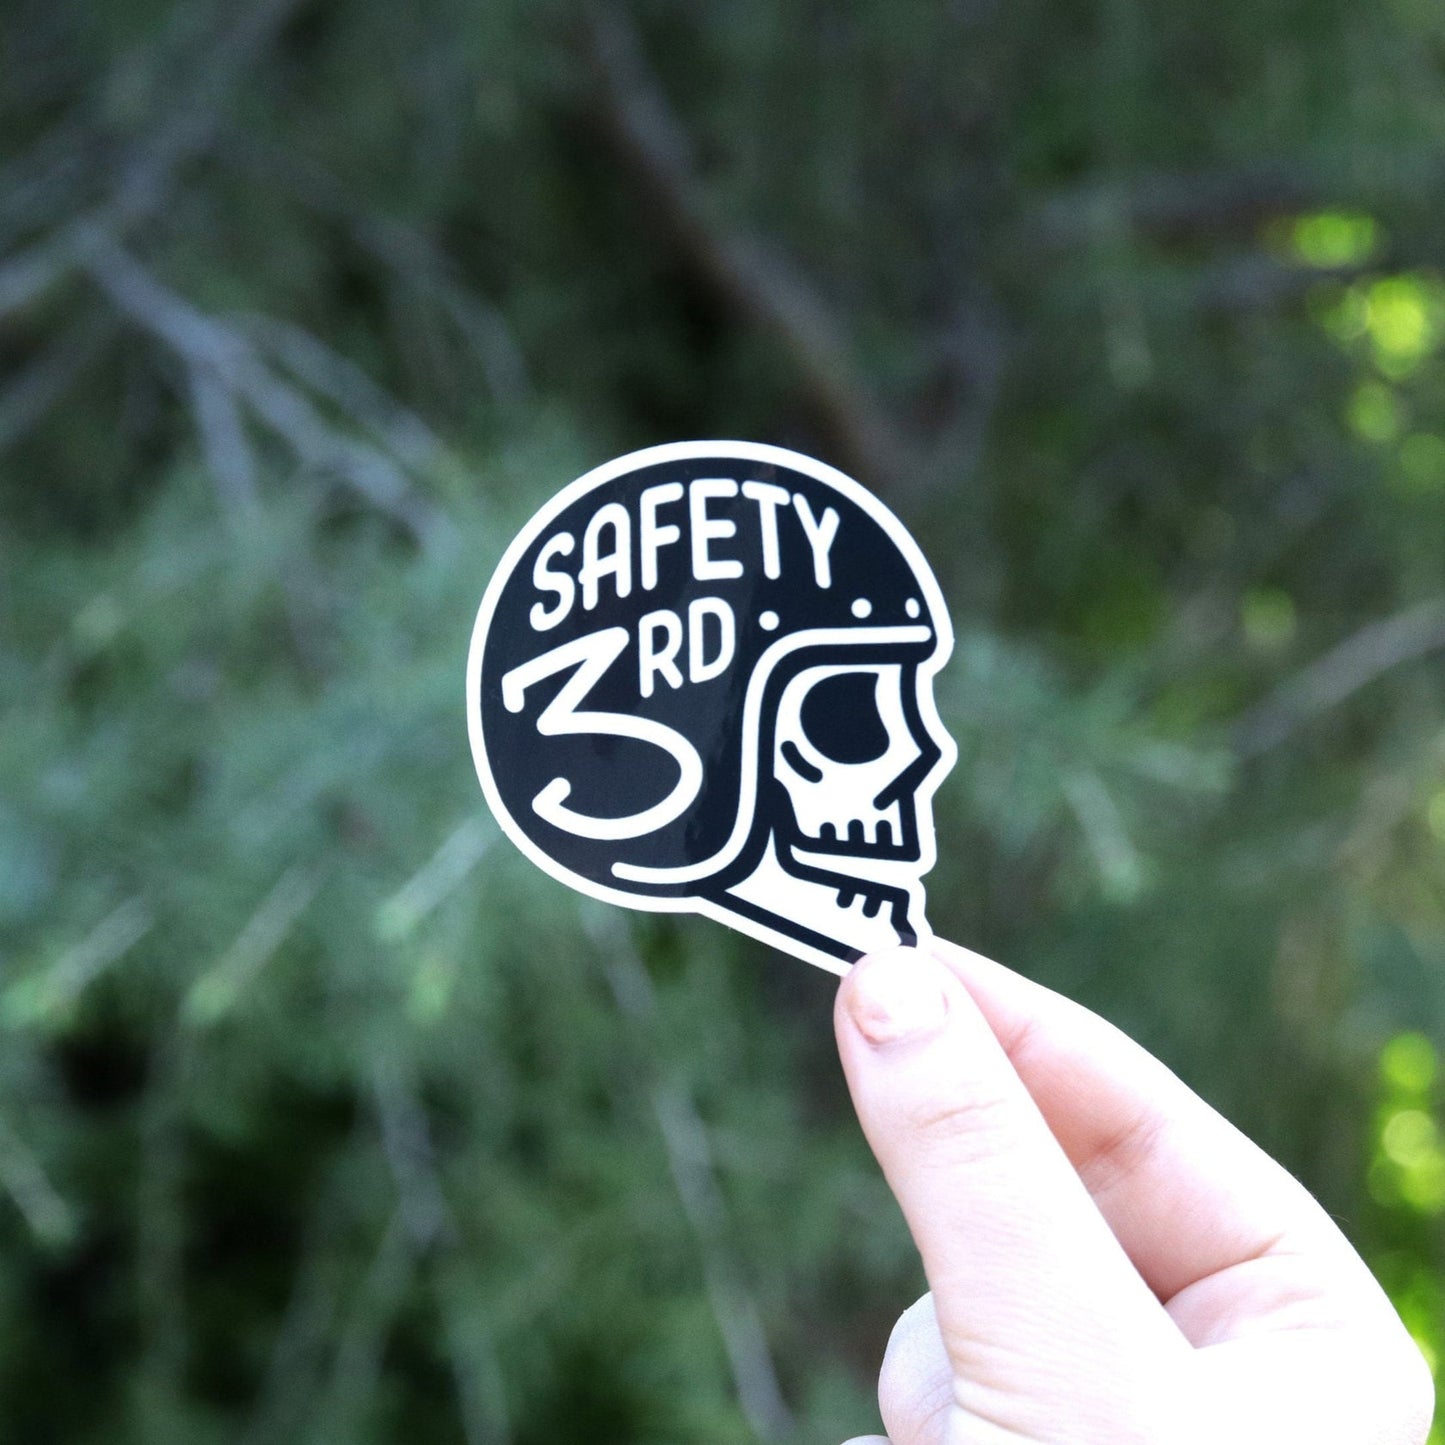 Safety Third Helmet Sticker